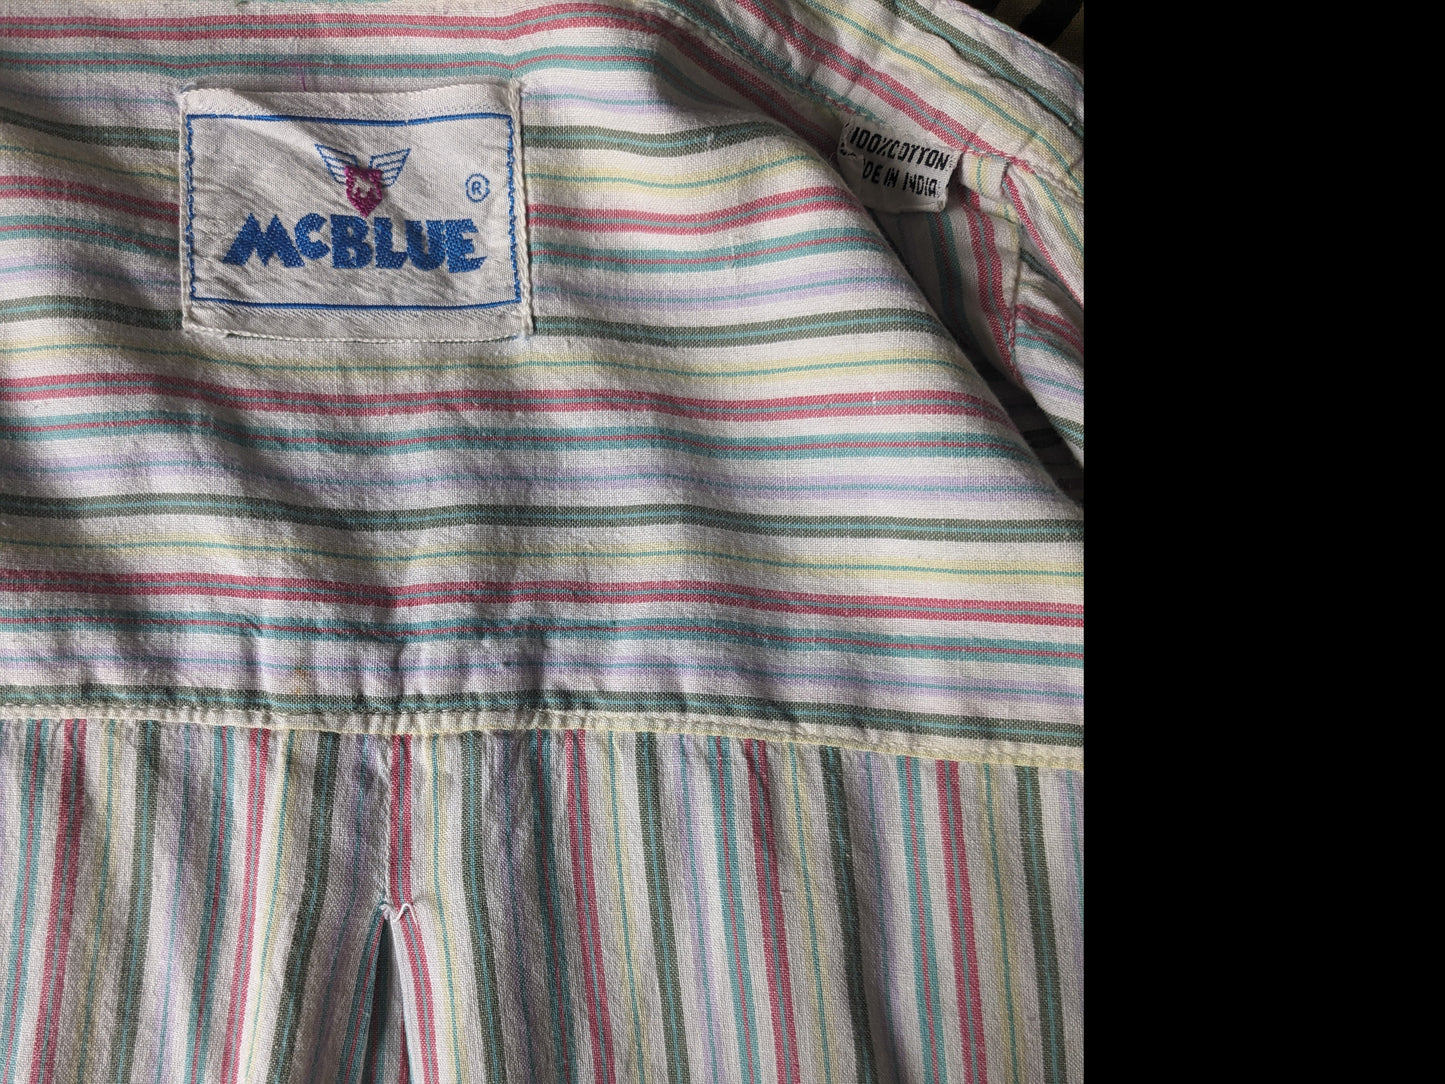 Vintage McBlue -Shirt mit MAO / Farmer / Stehkragen. Gelb grün rot blau gestreift. Größe xl.